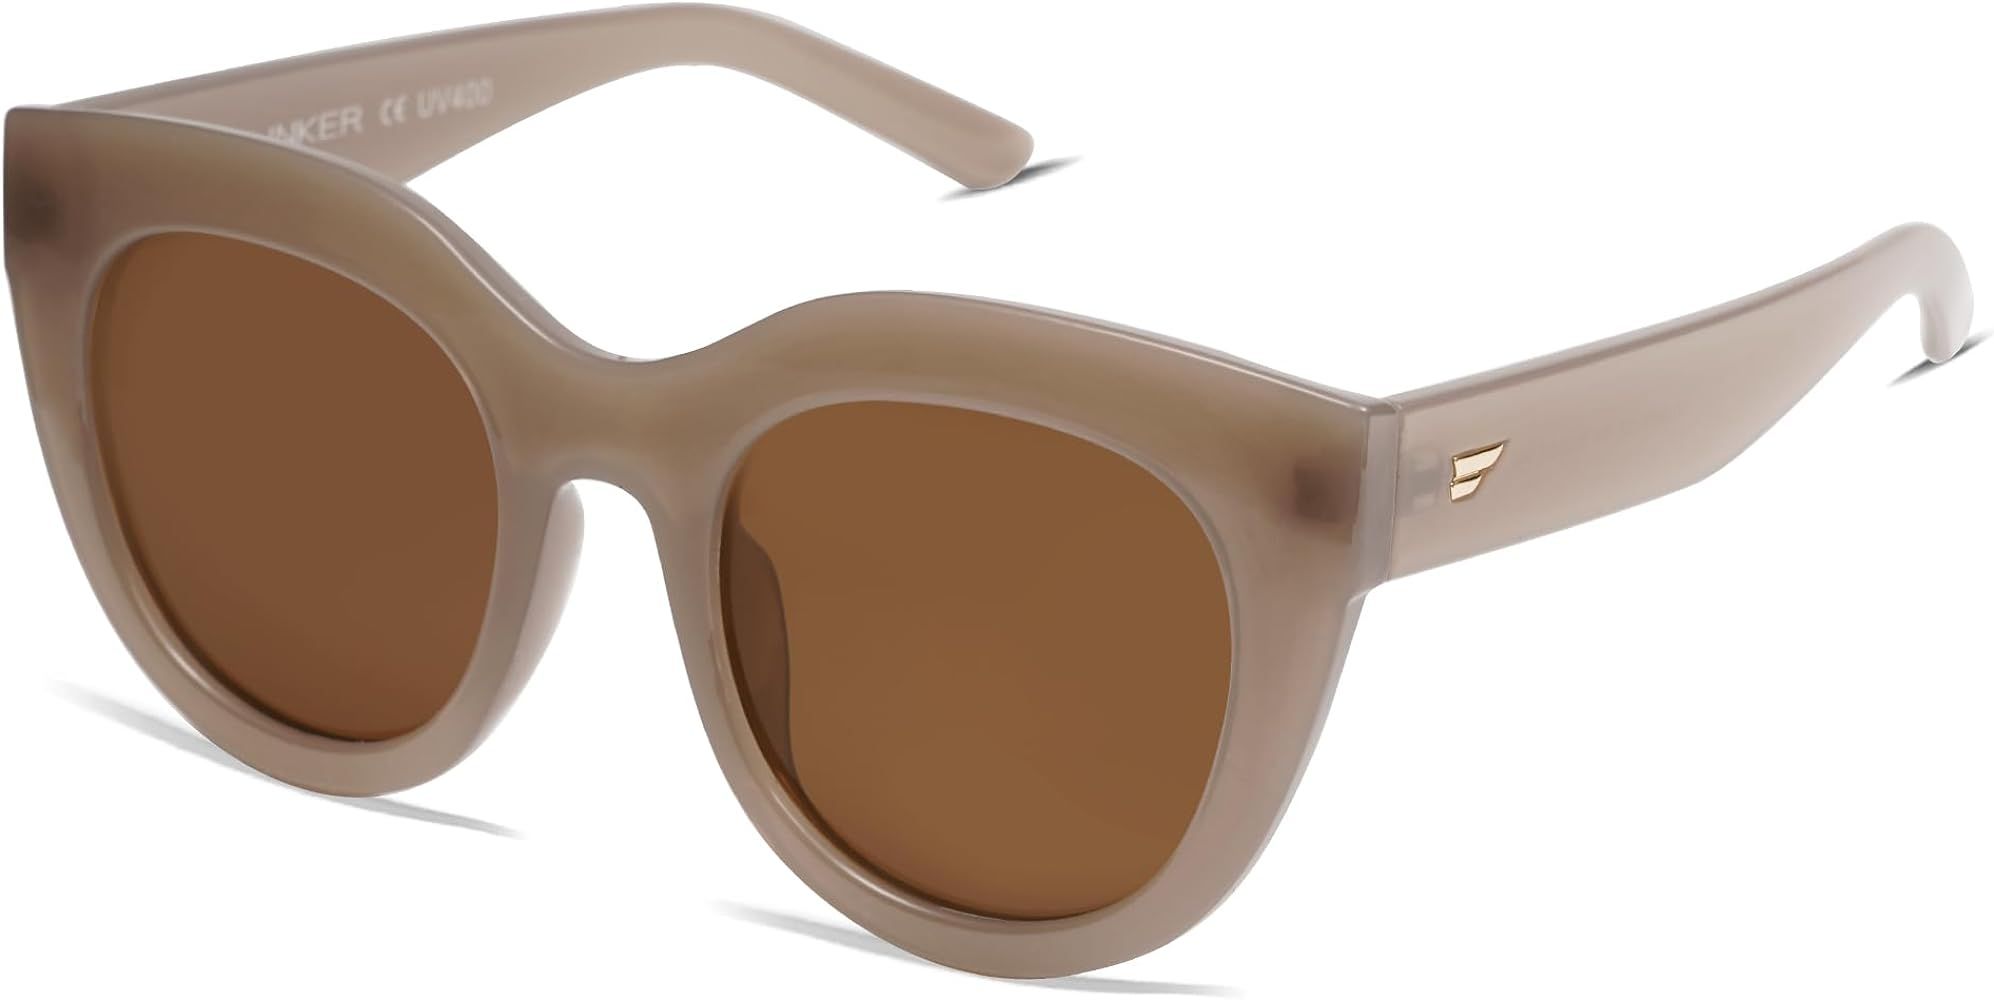 VANLINKER New Version Trendy Polarized Cat Eye Sunglasses for Women Retro Oversized Sunnies VL969... | Amazon (CA)